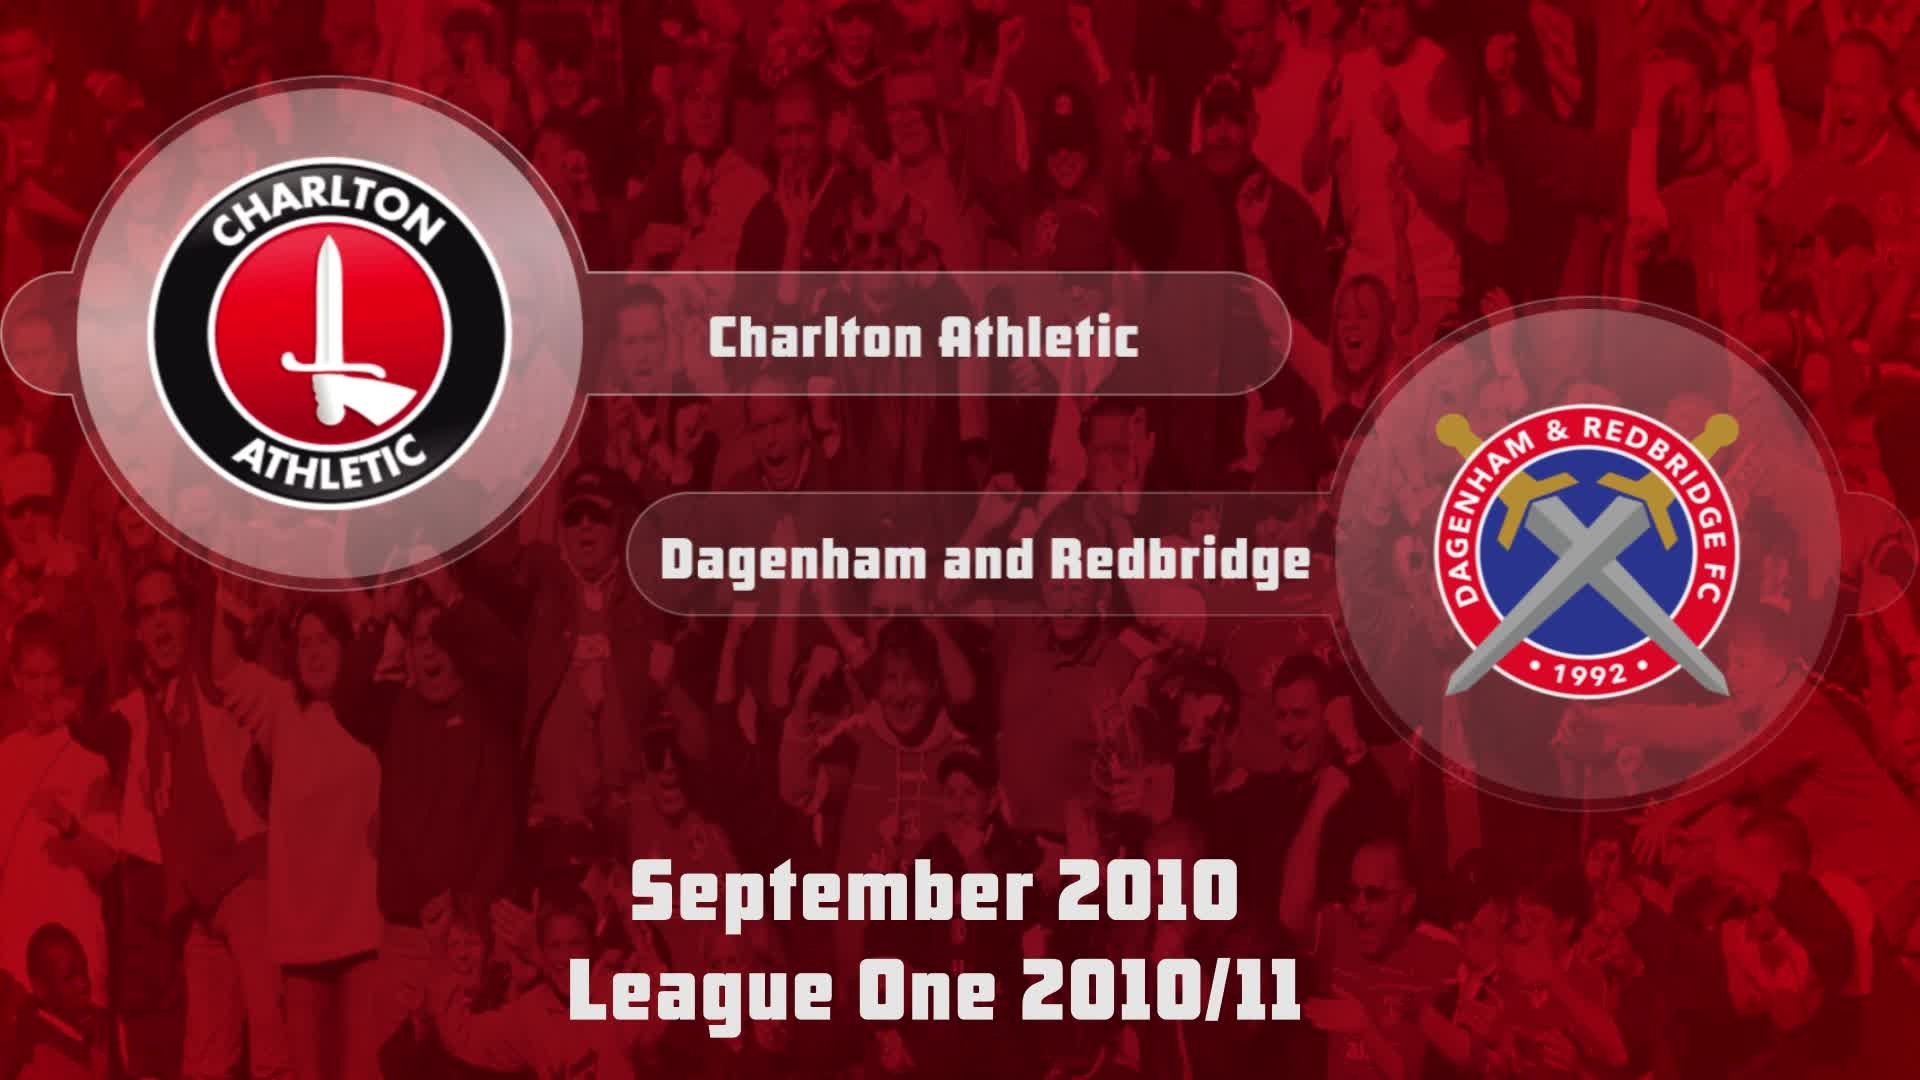 10 HIGHLIGHTS | Charlton 2 Dagenham & Redbridge 2 (Sept 2010)